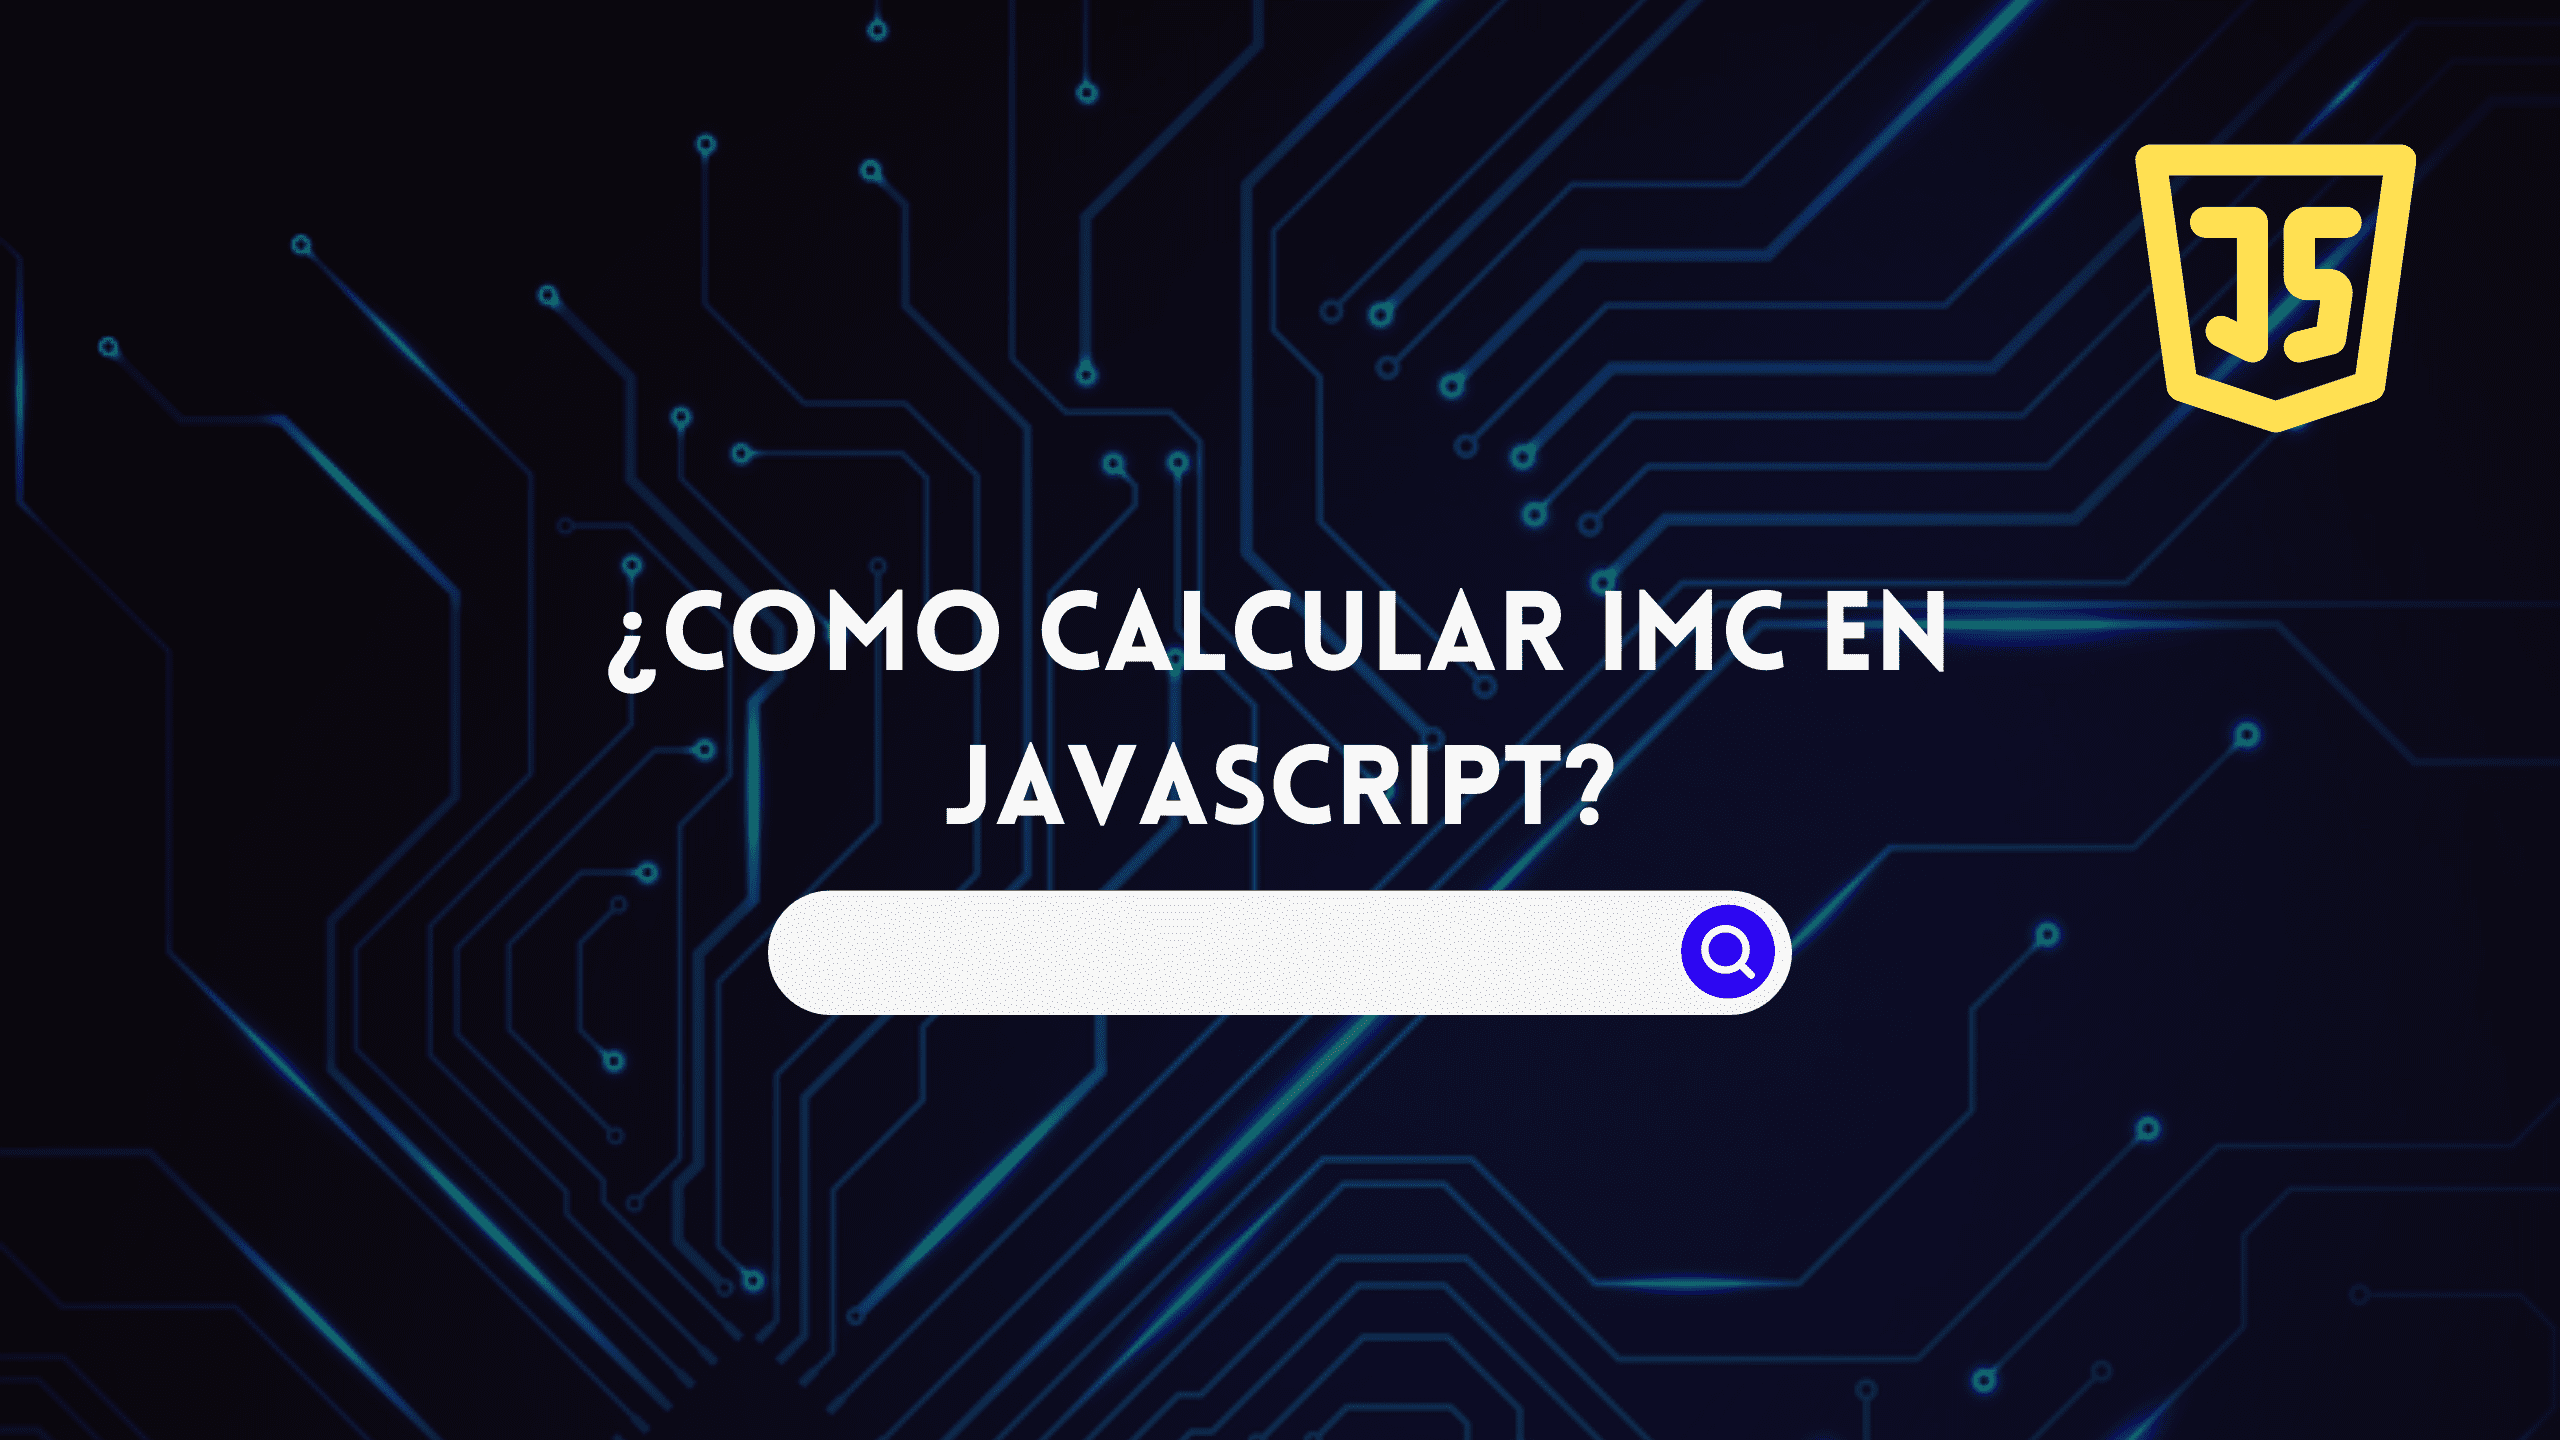 ¿Como calcular imc en javascript